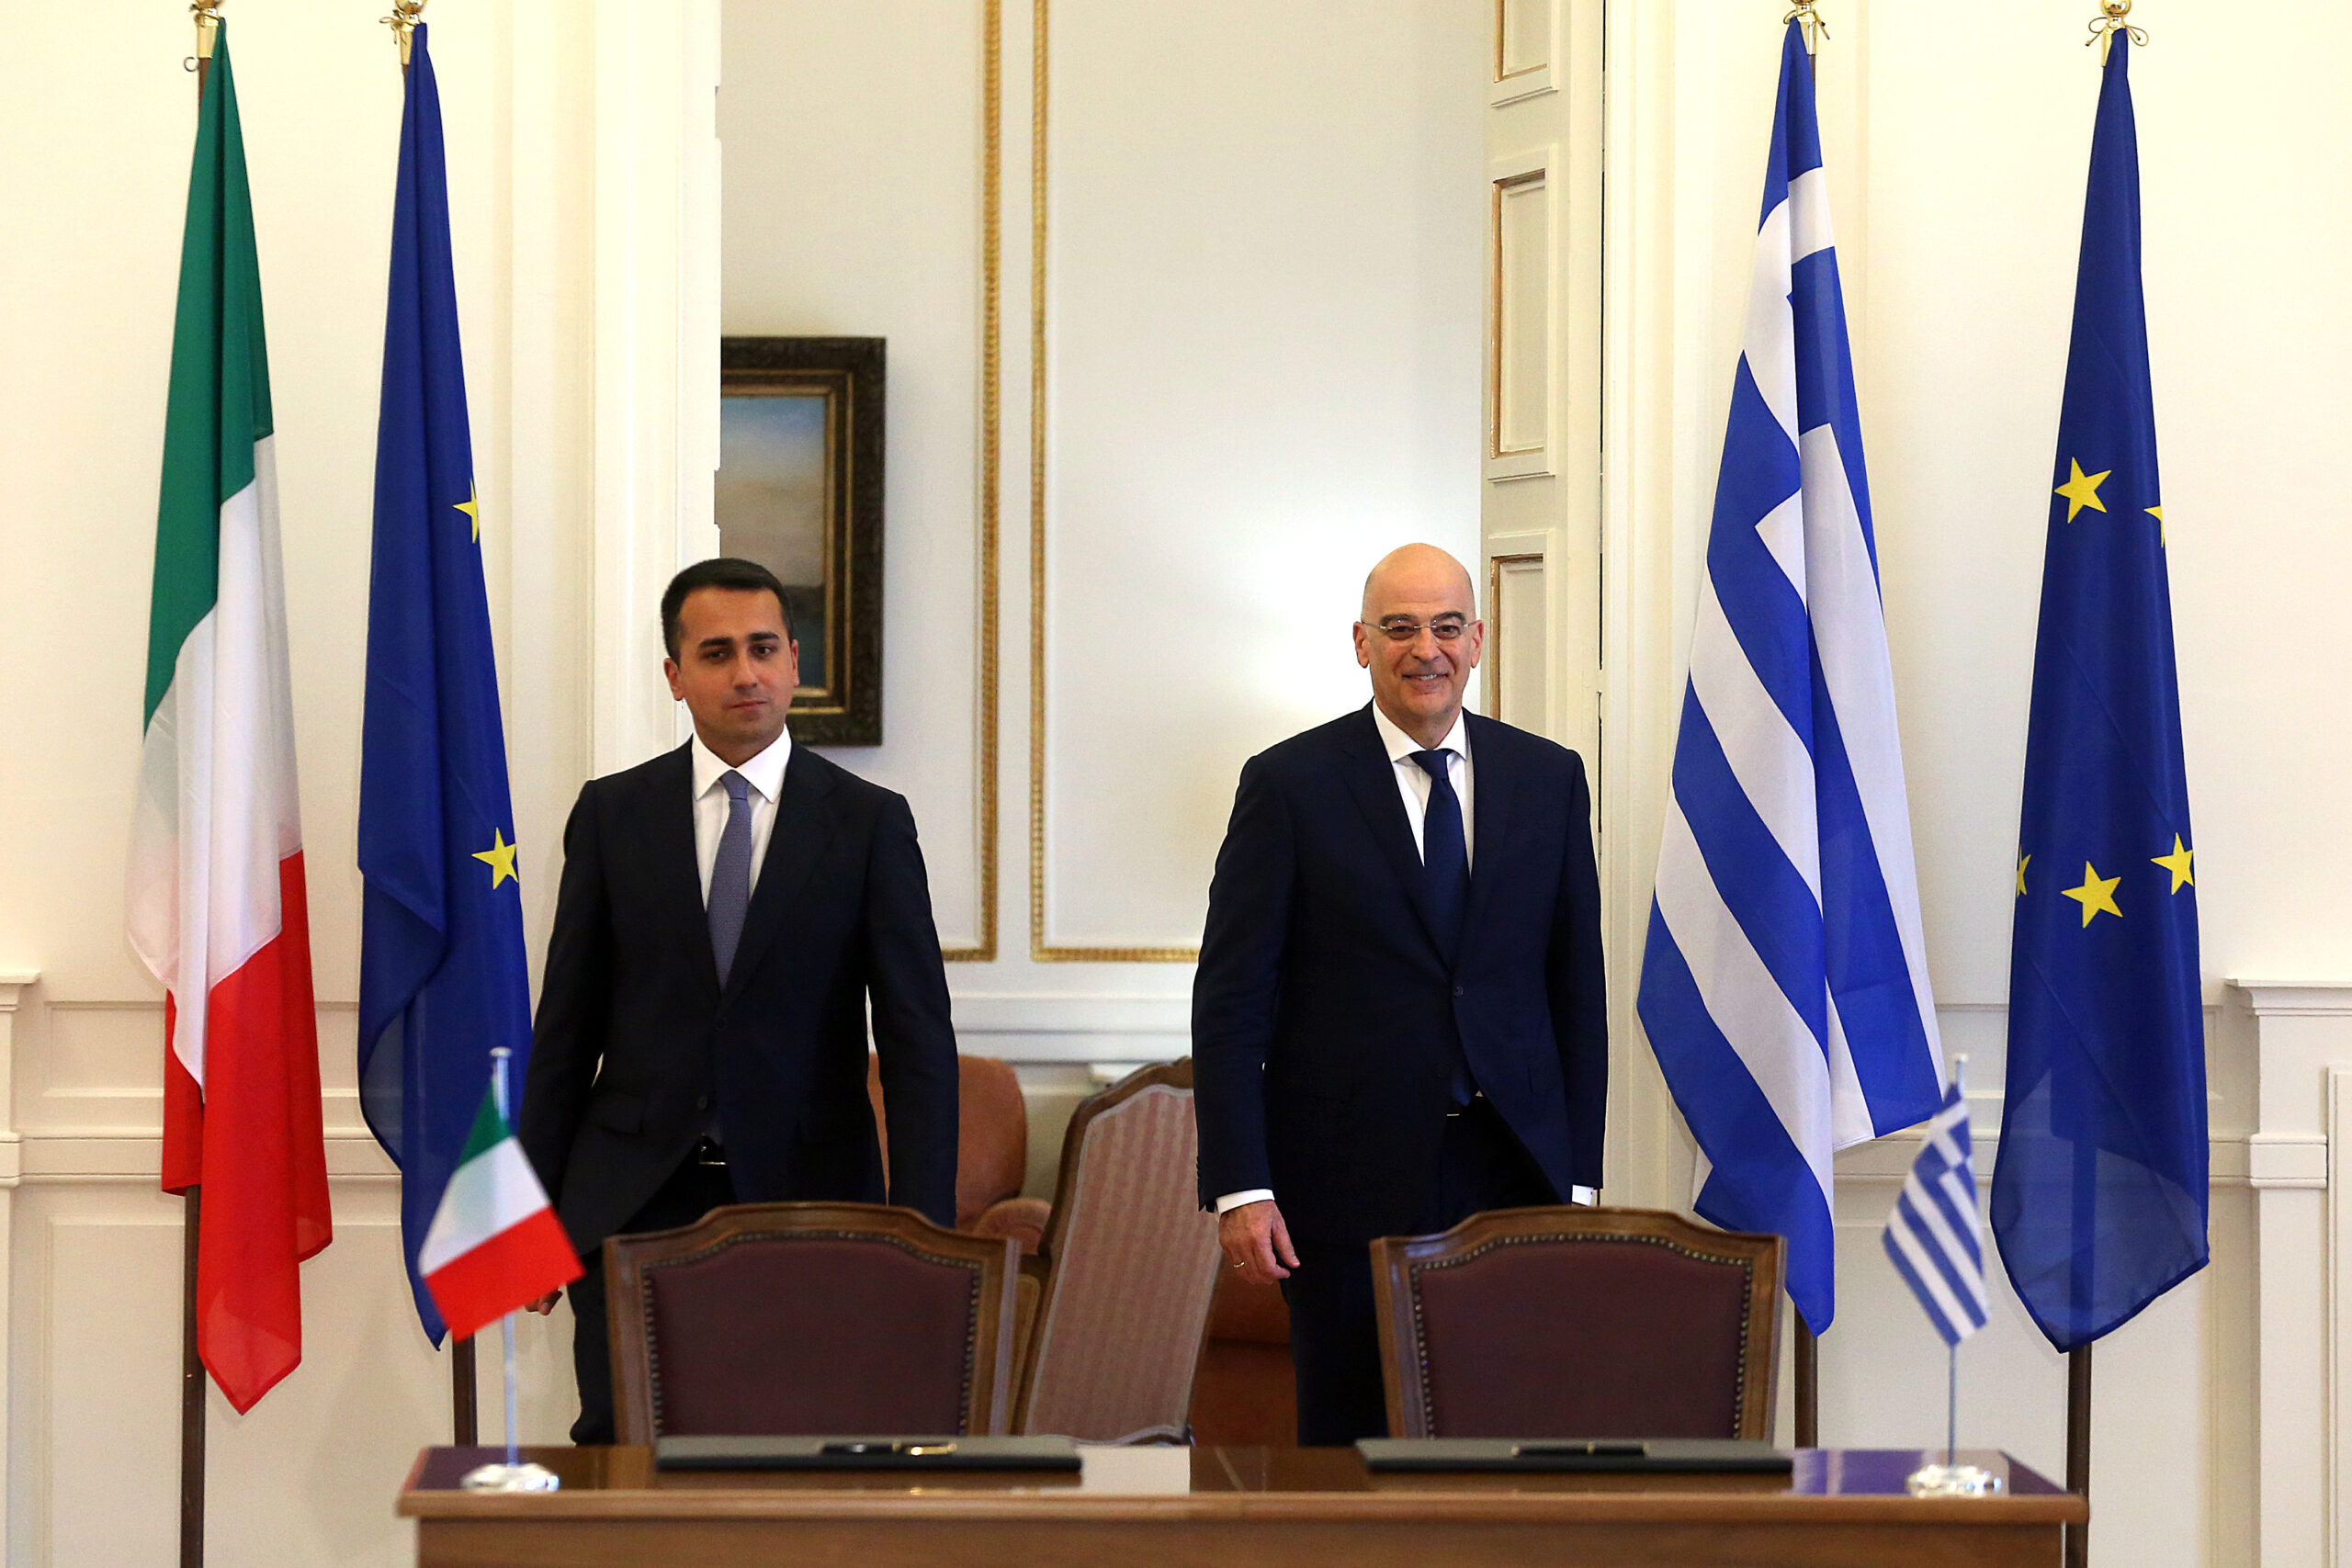 Ο υπουργός Εξωτερικών Νίκος Δένδιας και ο υπουργός Εξωτερικών της Ιταλίας Luigi Di Maio πριν υπογράψουν την Συμφωνία Οριοθέτησης Θαλλάσιων Ζωνών μεταξύ Ελλάδας και Ιταλίας στο Υπουργείο Εξωτερικών, Αθήνα Τρίτη 9 Ιουνίου 2020. ΑΠΕ-ΜΠΕ/ΑΠΕ-ΜΠΕ/ΟΡΕΣΤΗΣ ΠΑΝΑΓΙΩΤΟΥ